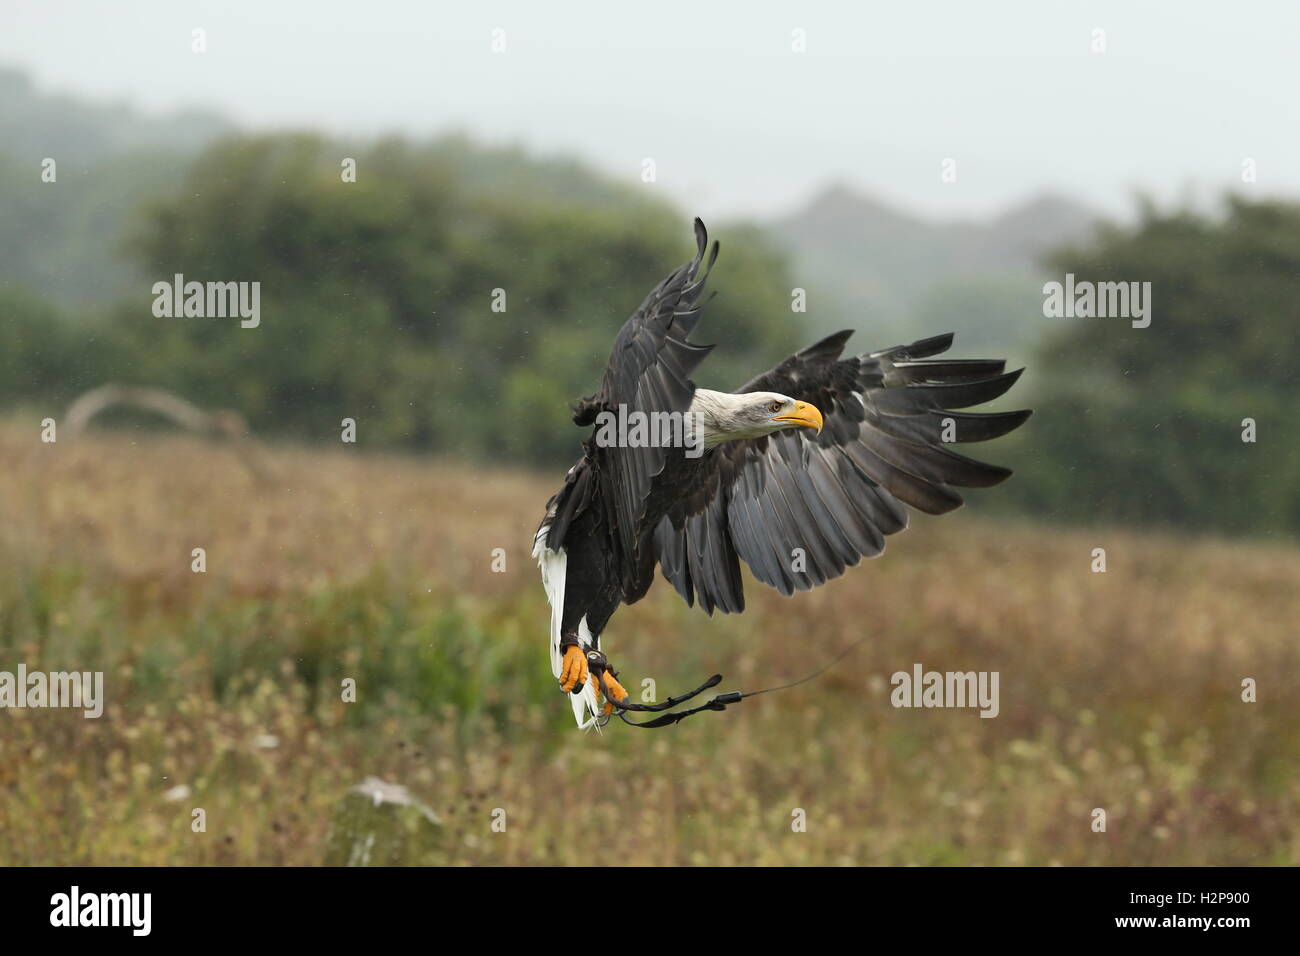 Cerca de un águila volando en la lluvia Foto de stock